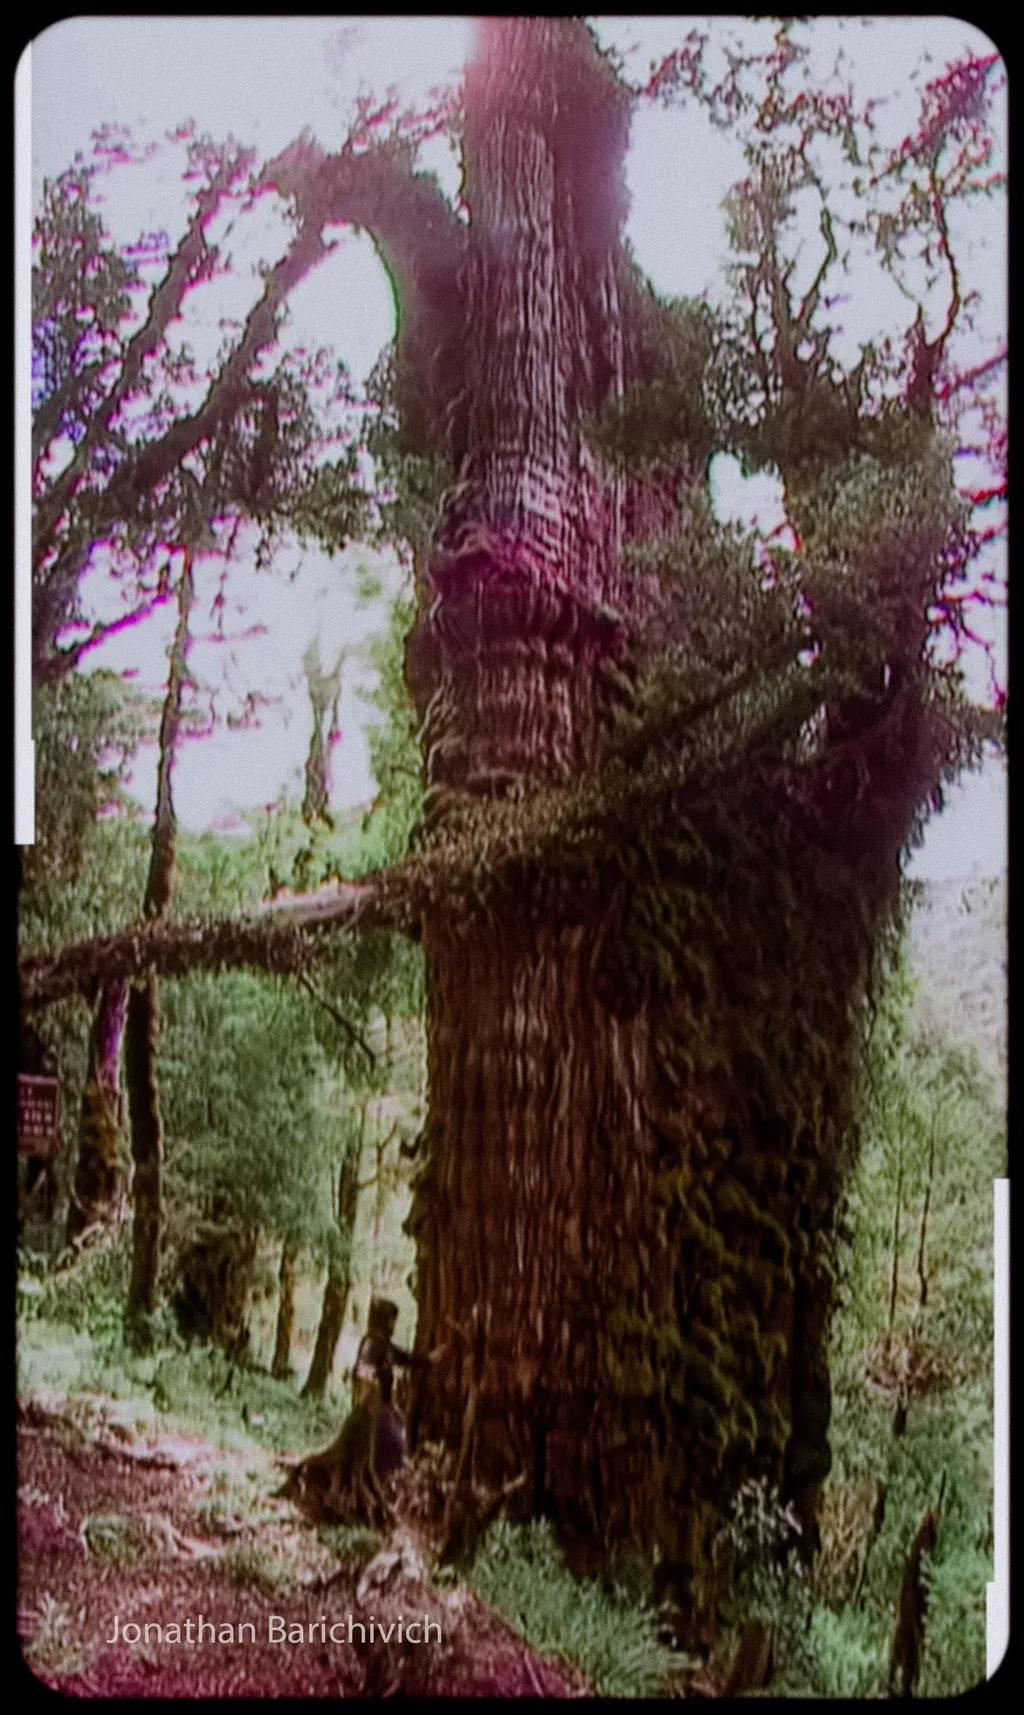 O Alerce Milenario, ou Gran Abuelo, espécime que pode ser a árvore mais velha do mundo (Imagem: Dr. Jonathan Barichivich/Divulgação)